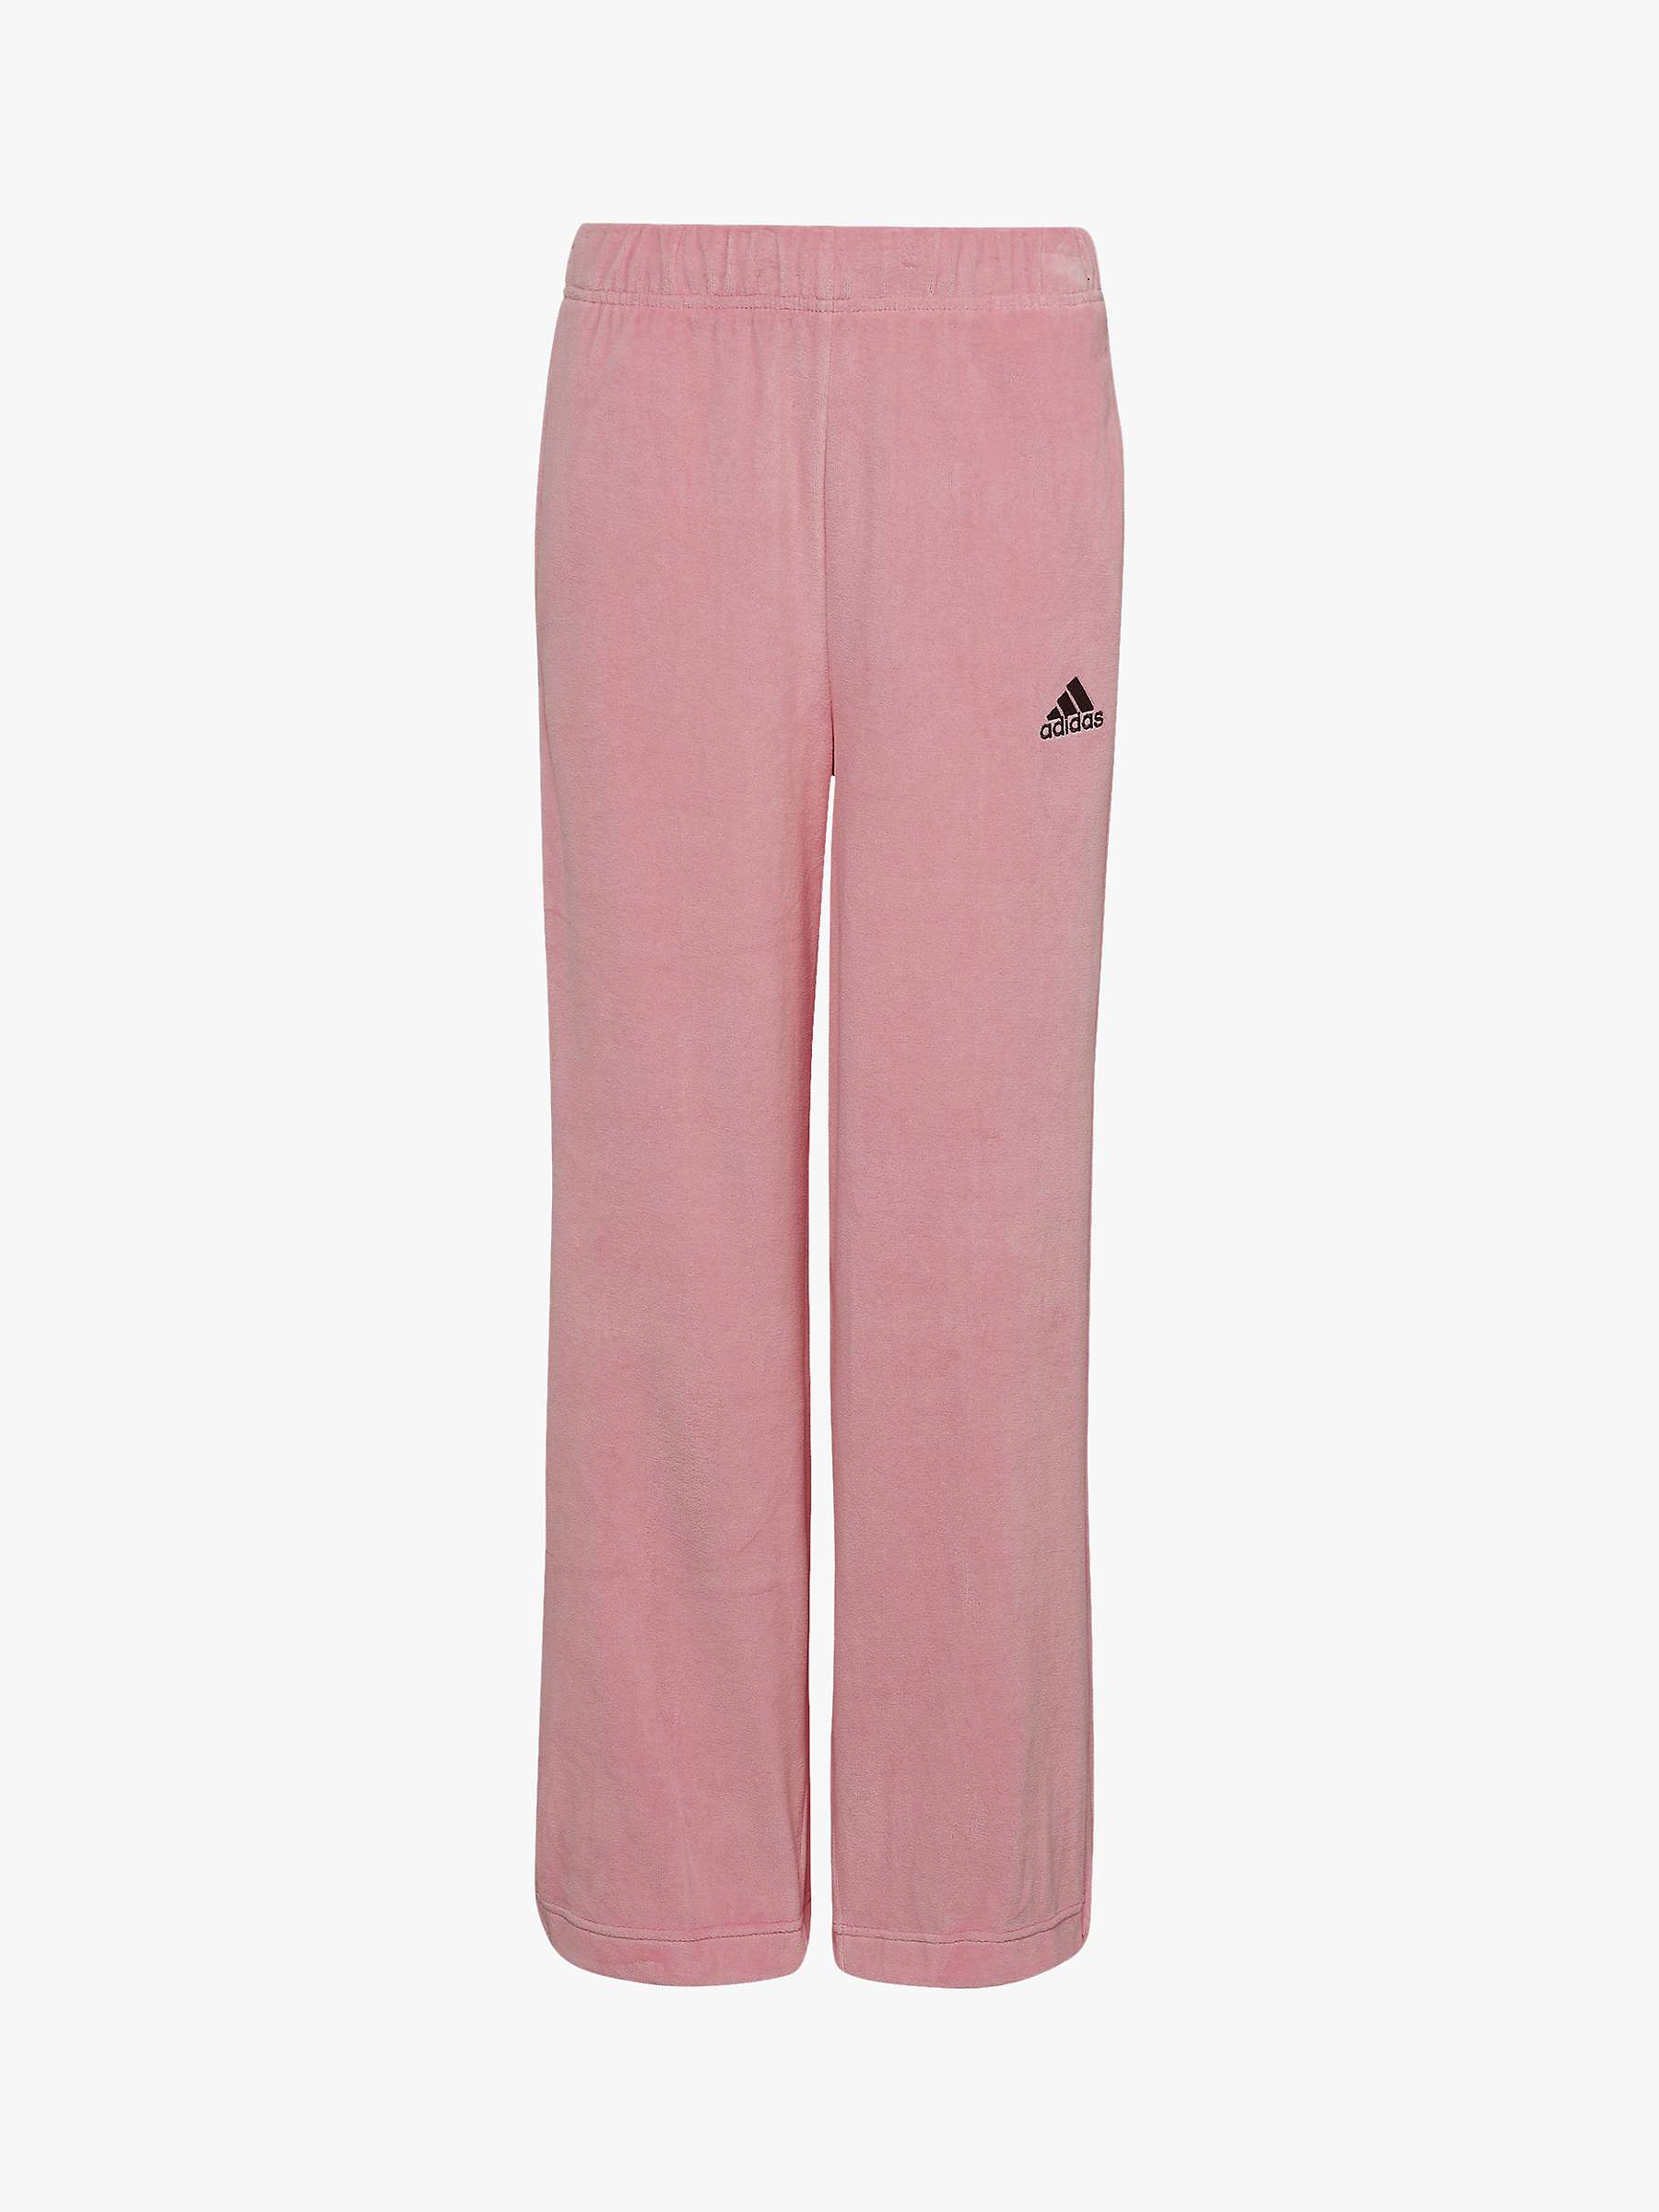 adidas Kids' Plain Logo Velour Jogging Bottoms, Pink at John Lewis ...